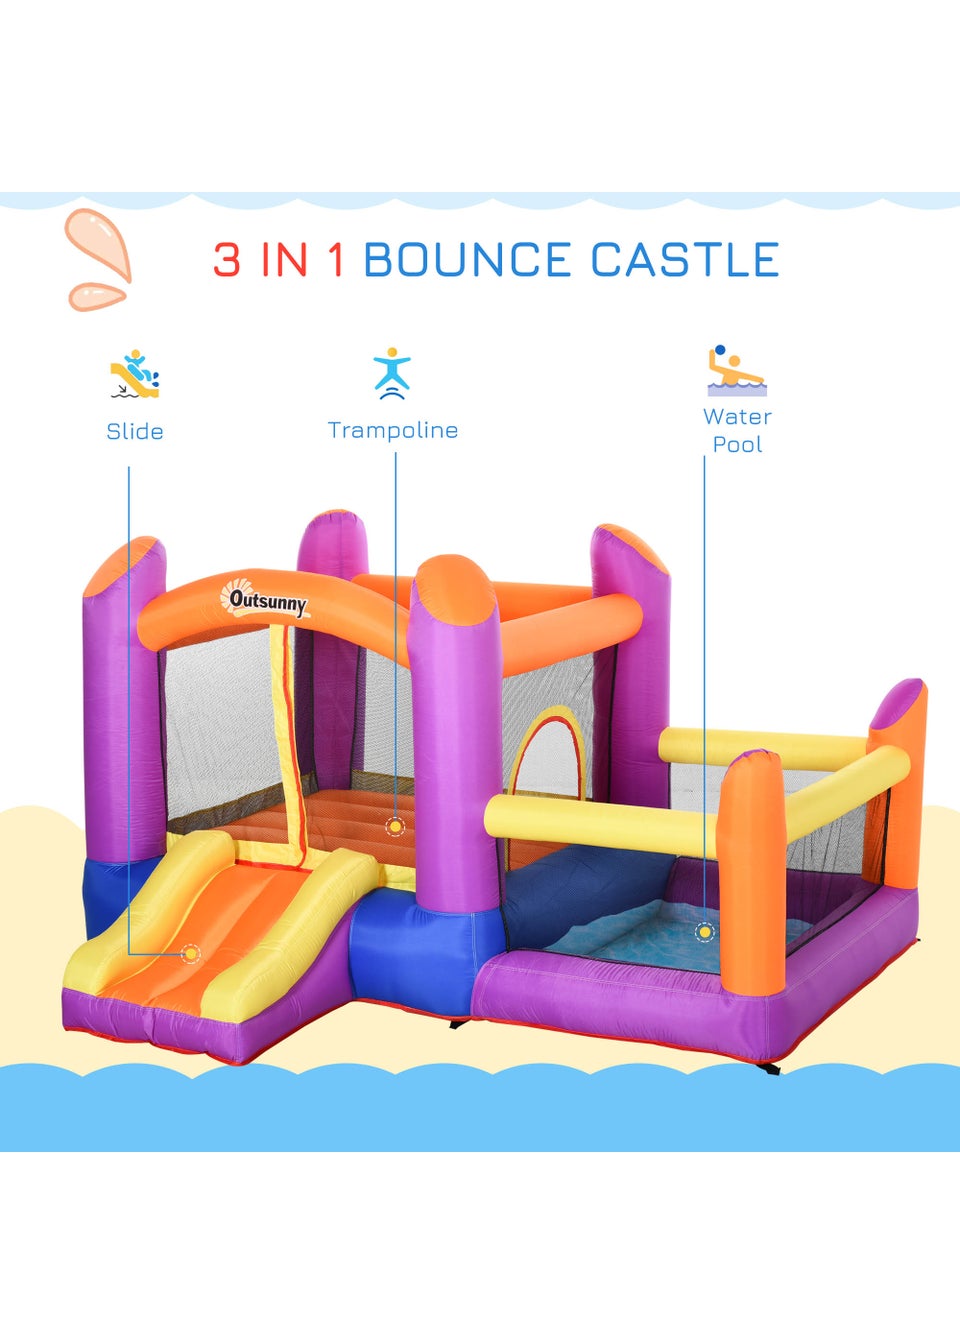 Outsunny Inflatable Bouncy Castle (170cm x 280cm x 250cm)